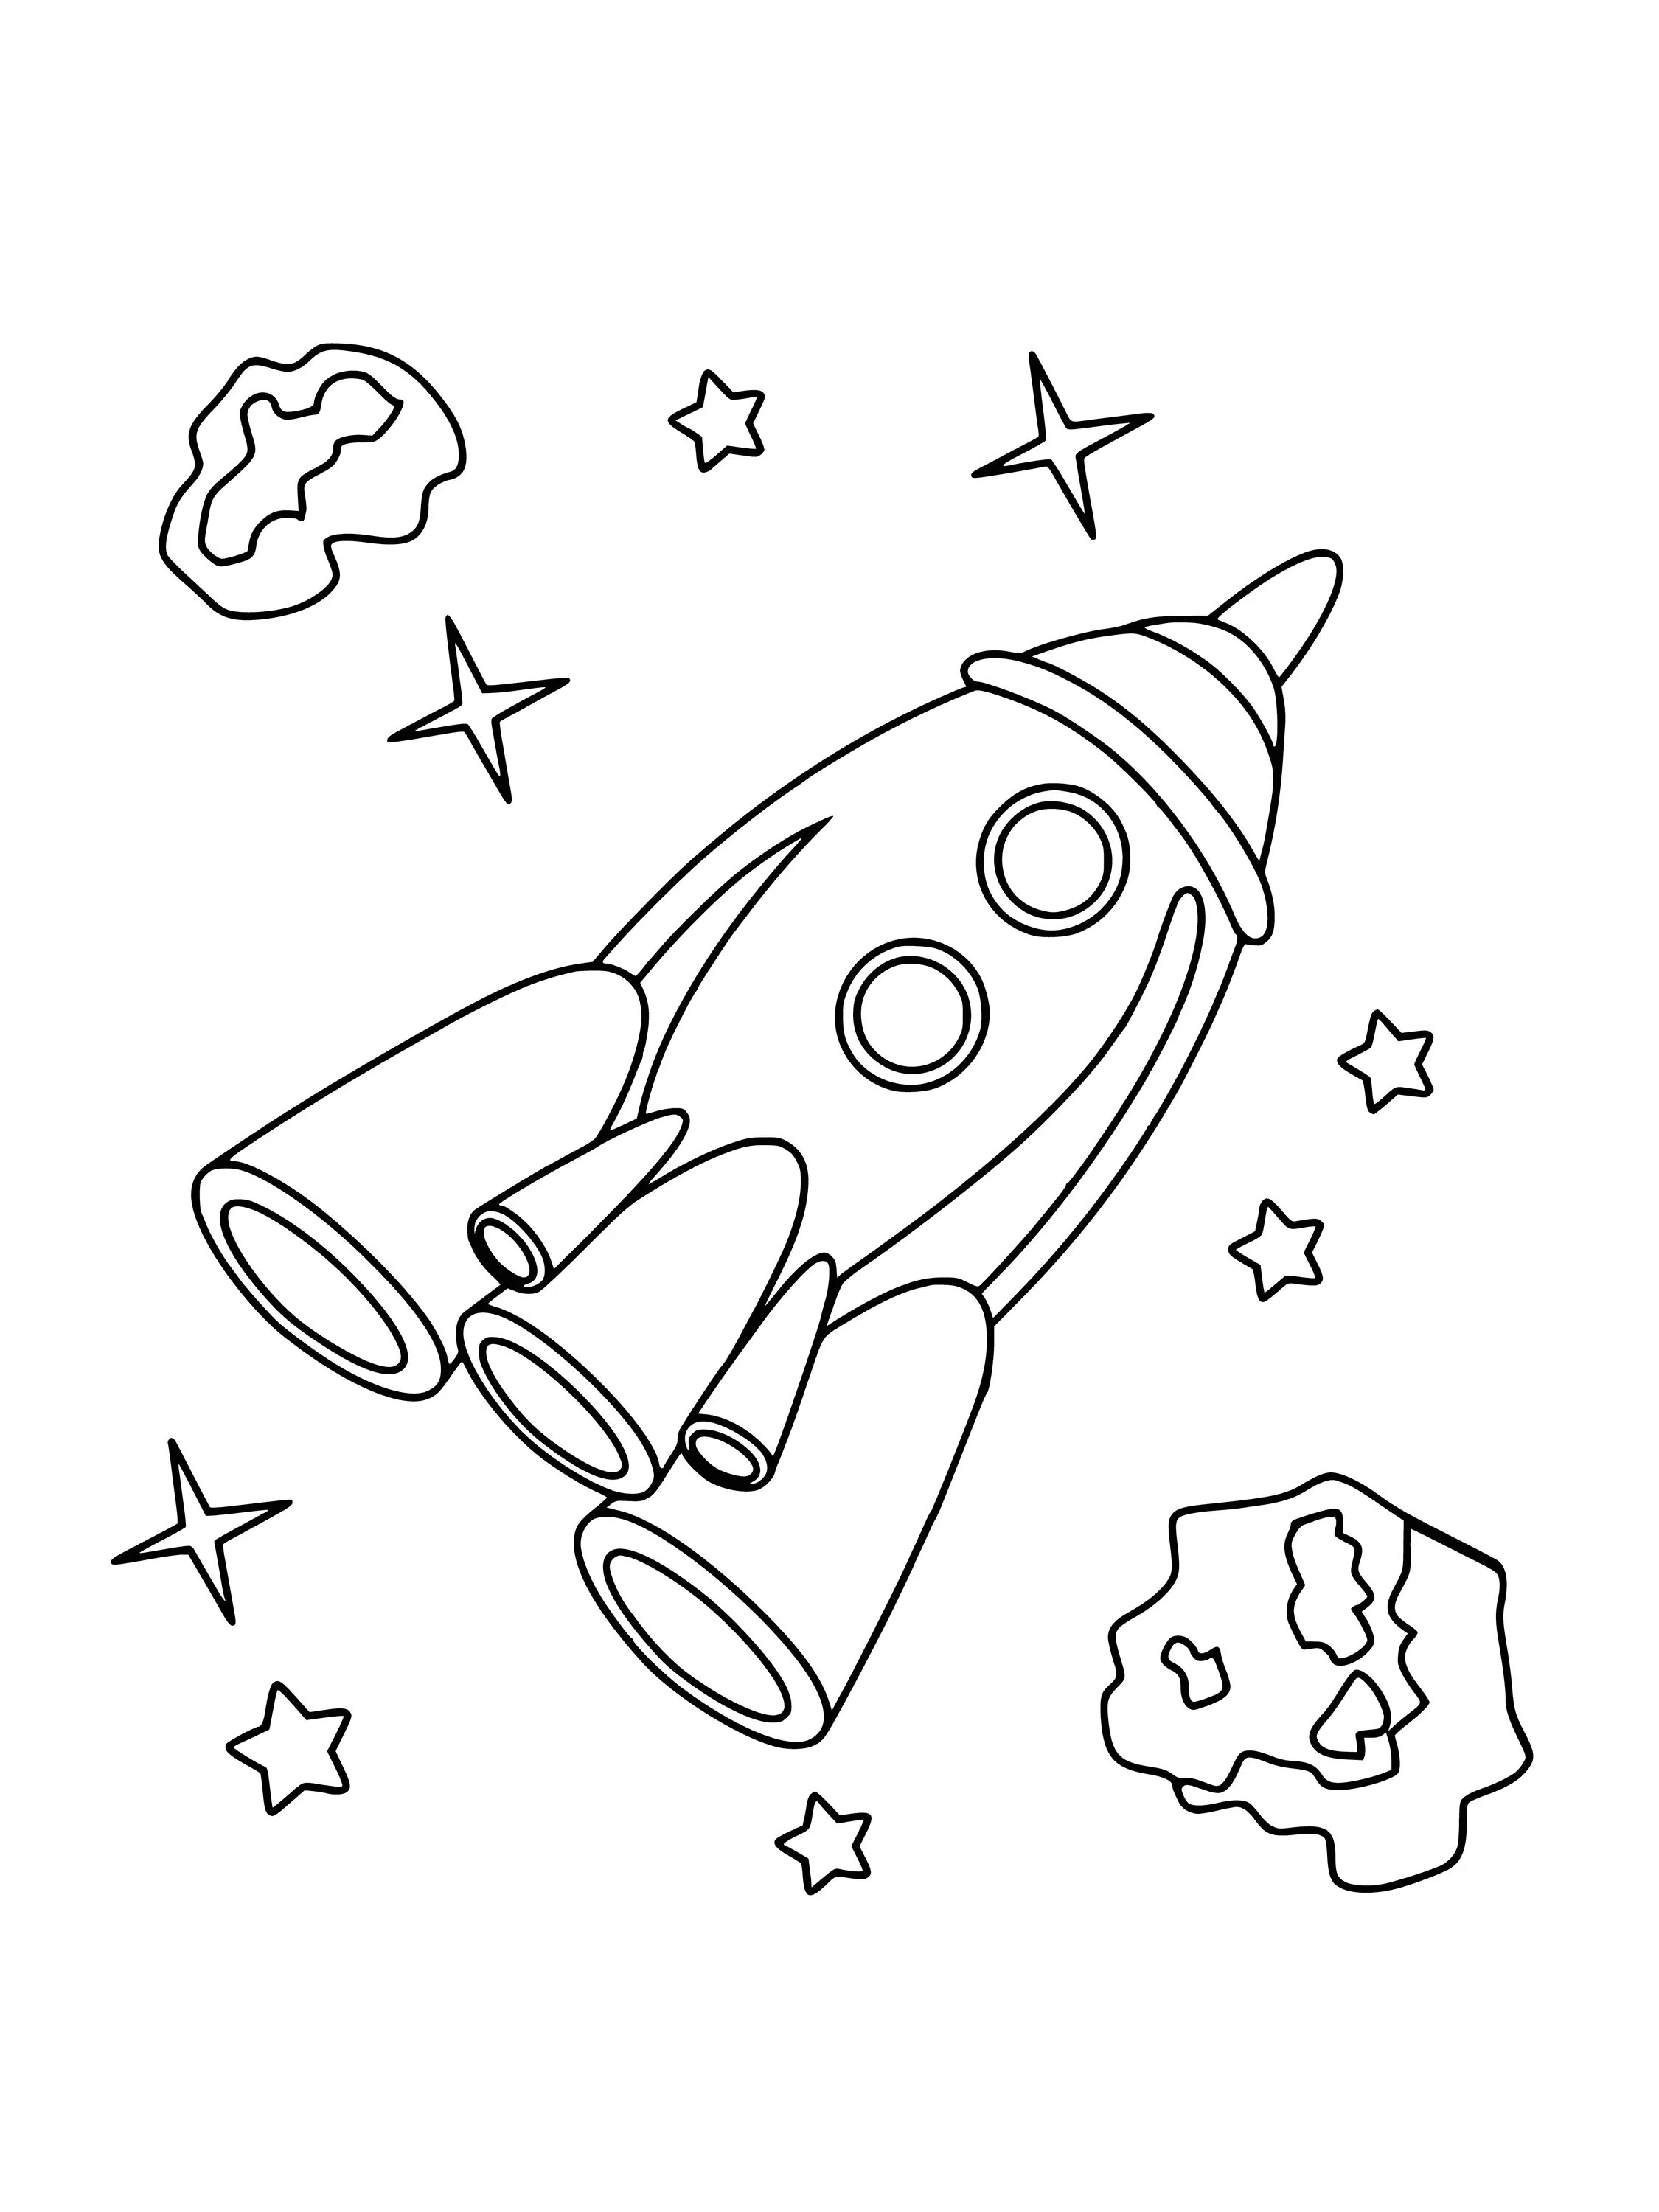 Раскраска ракета для детей 4 5 лет. Ракета раскраска. Космос раскраска для детей. Ракета раскраска для детей. Раскраска для мальчиков ракета.